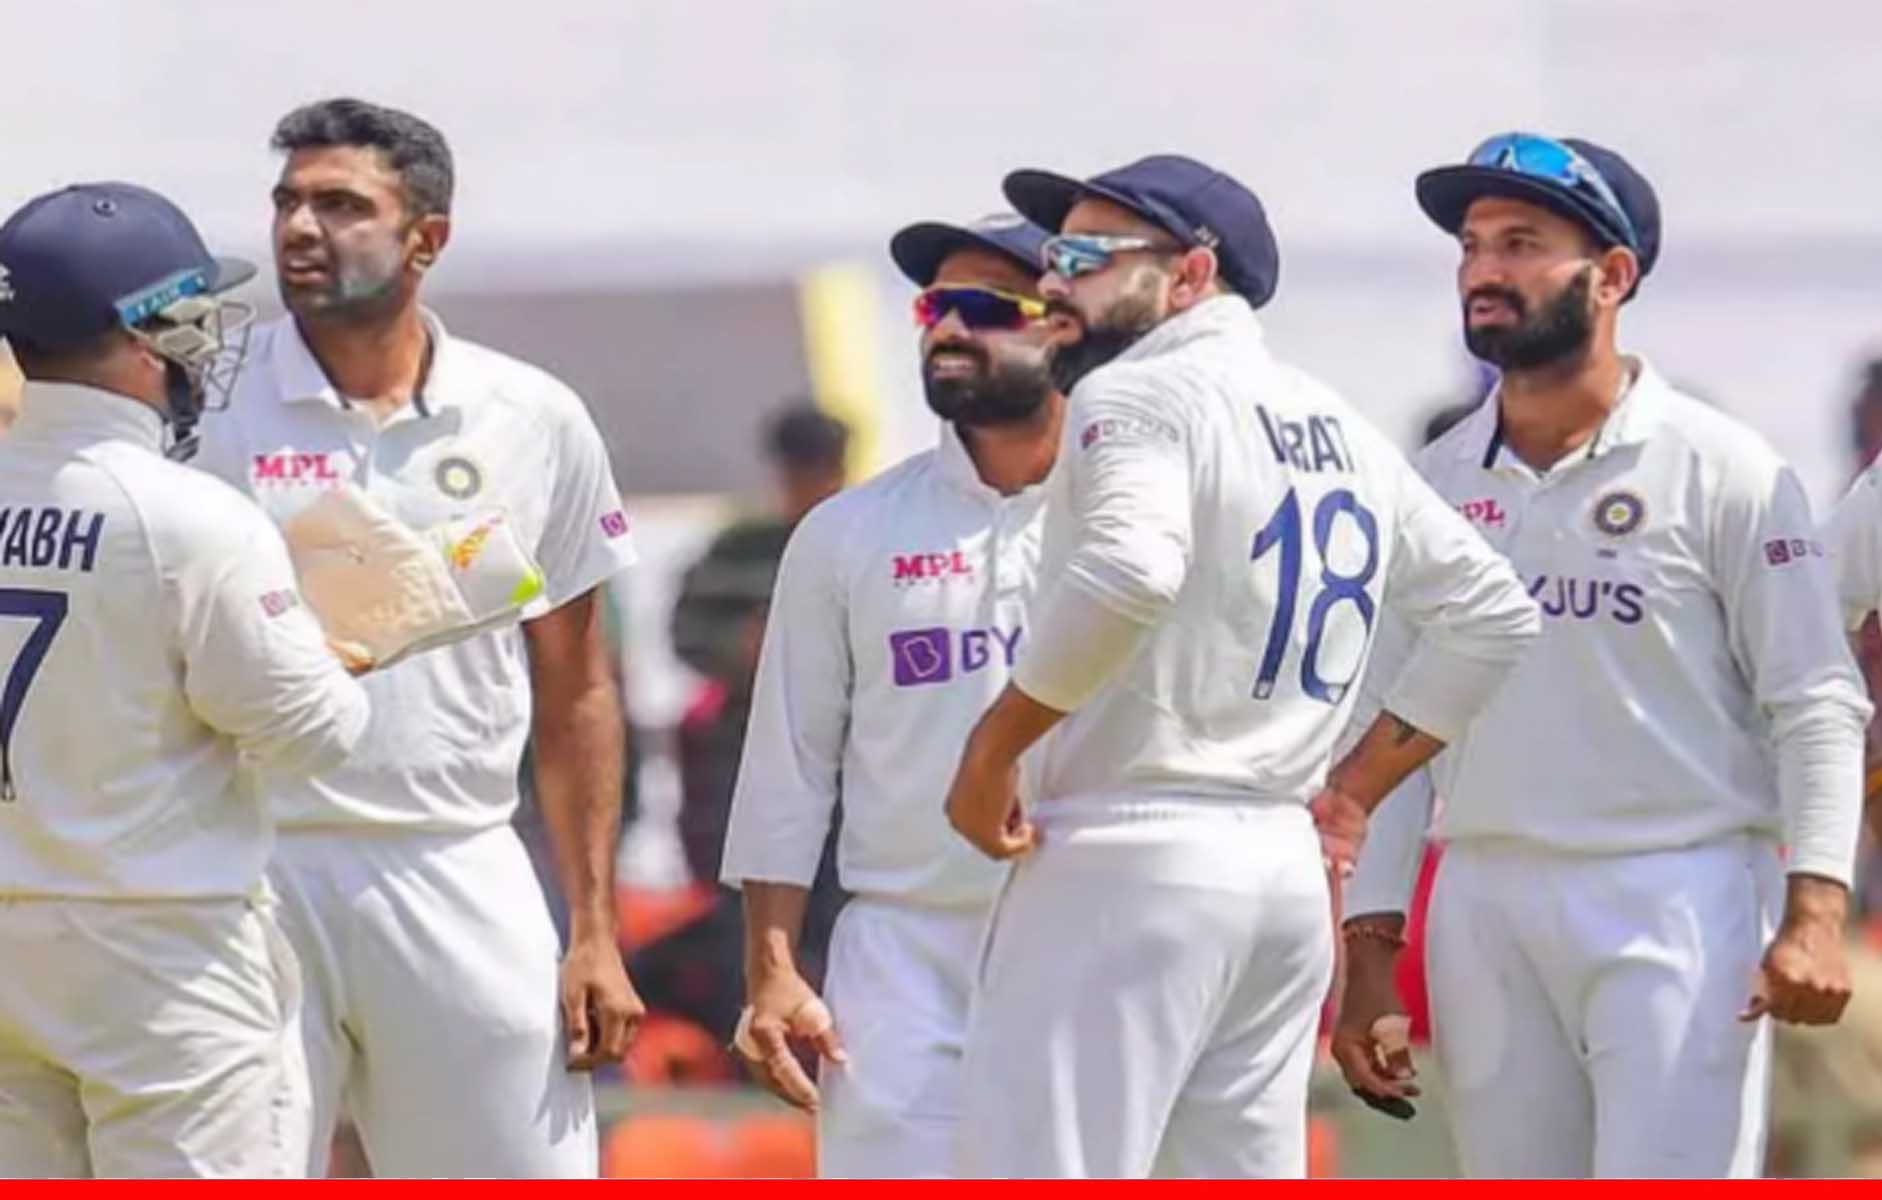 IND vs NZ: कोरोना महामारी के चलते भारतीय क्रिकेट टीम का प्रस्तावित न्यूजीलैंड दौरा रद्द